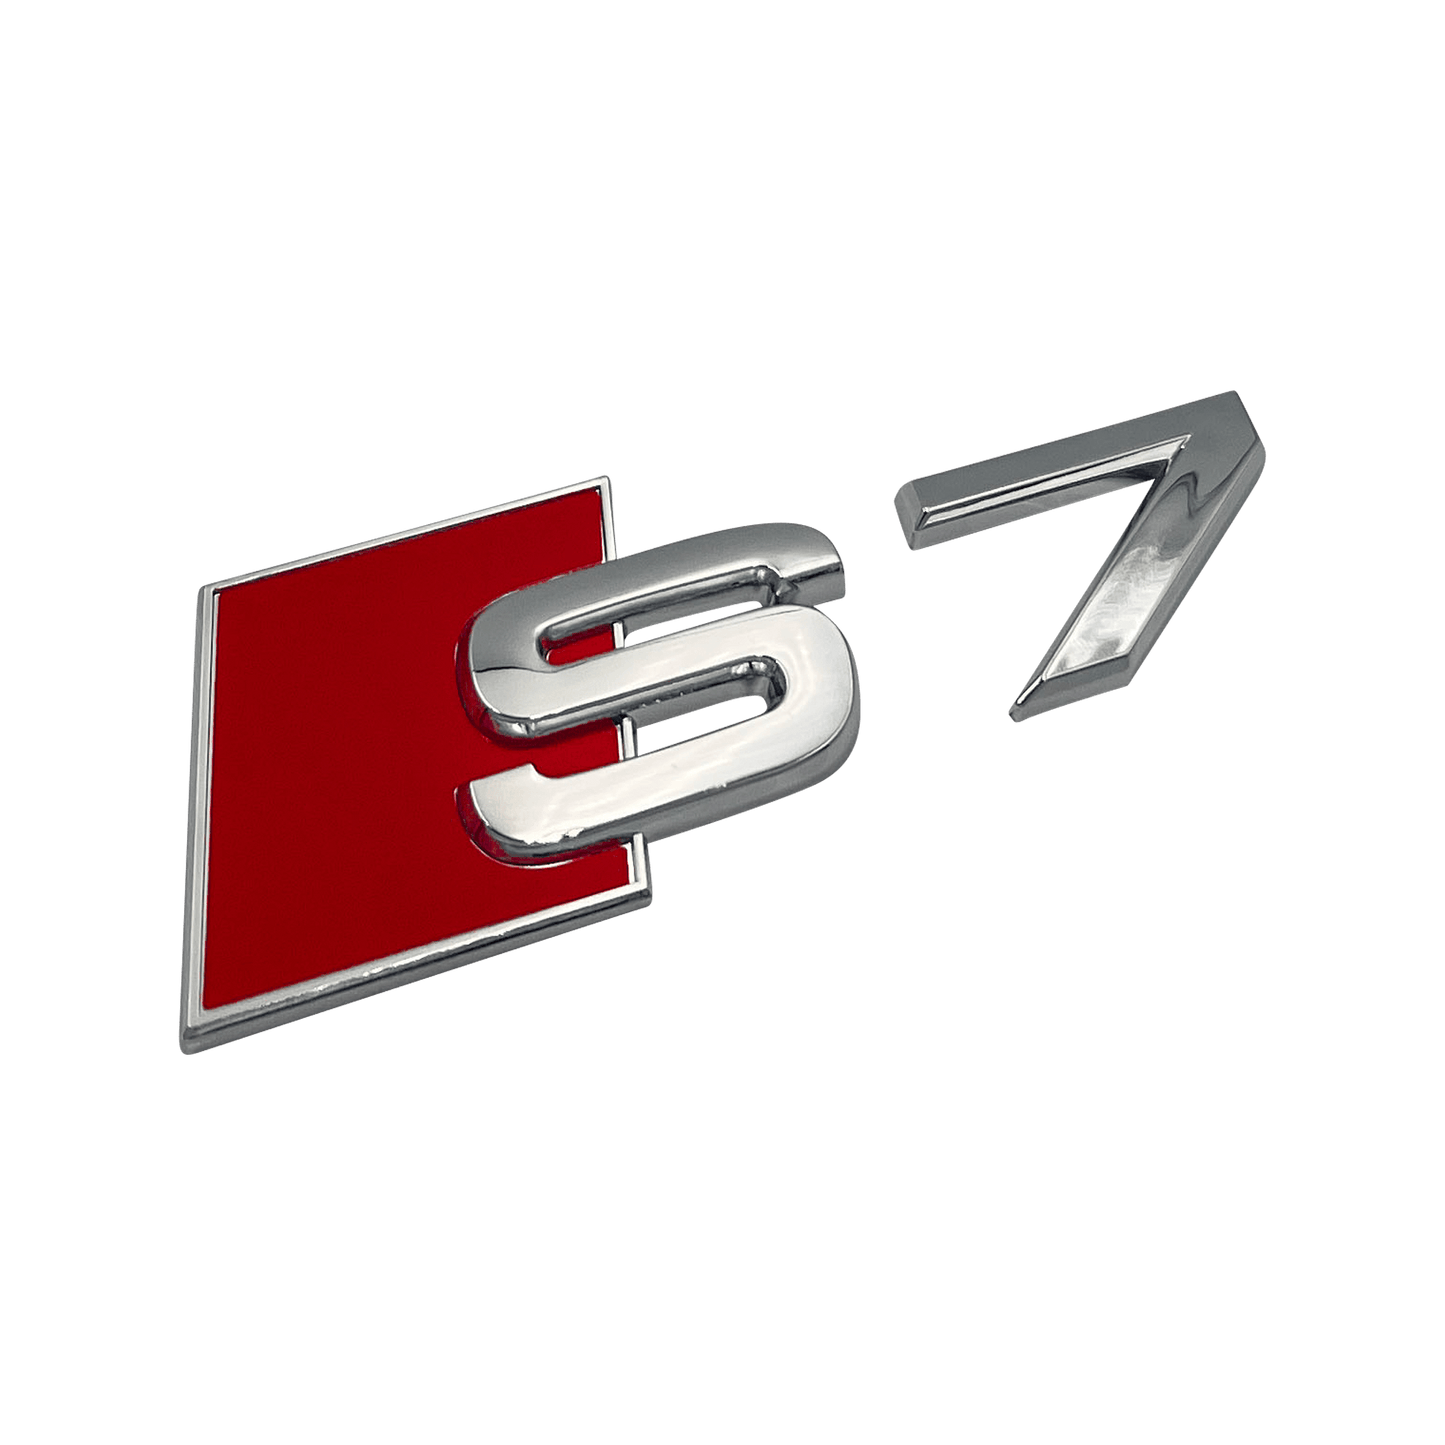 Chrome Audi S7 Rear Emblem Badge 